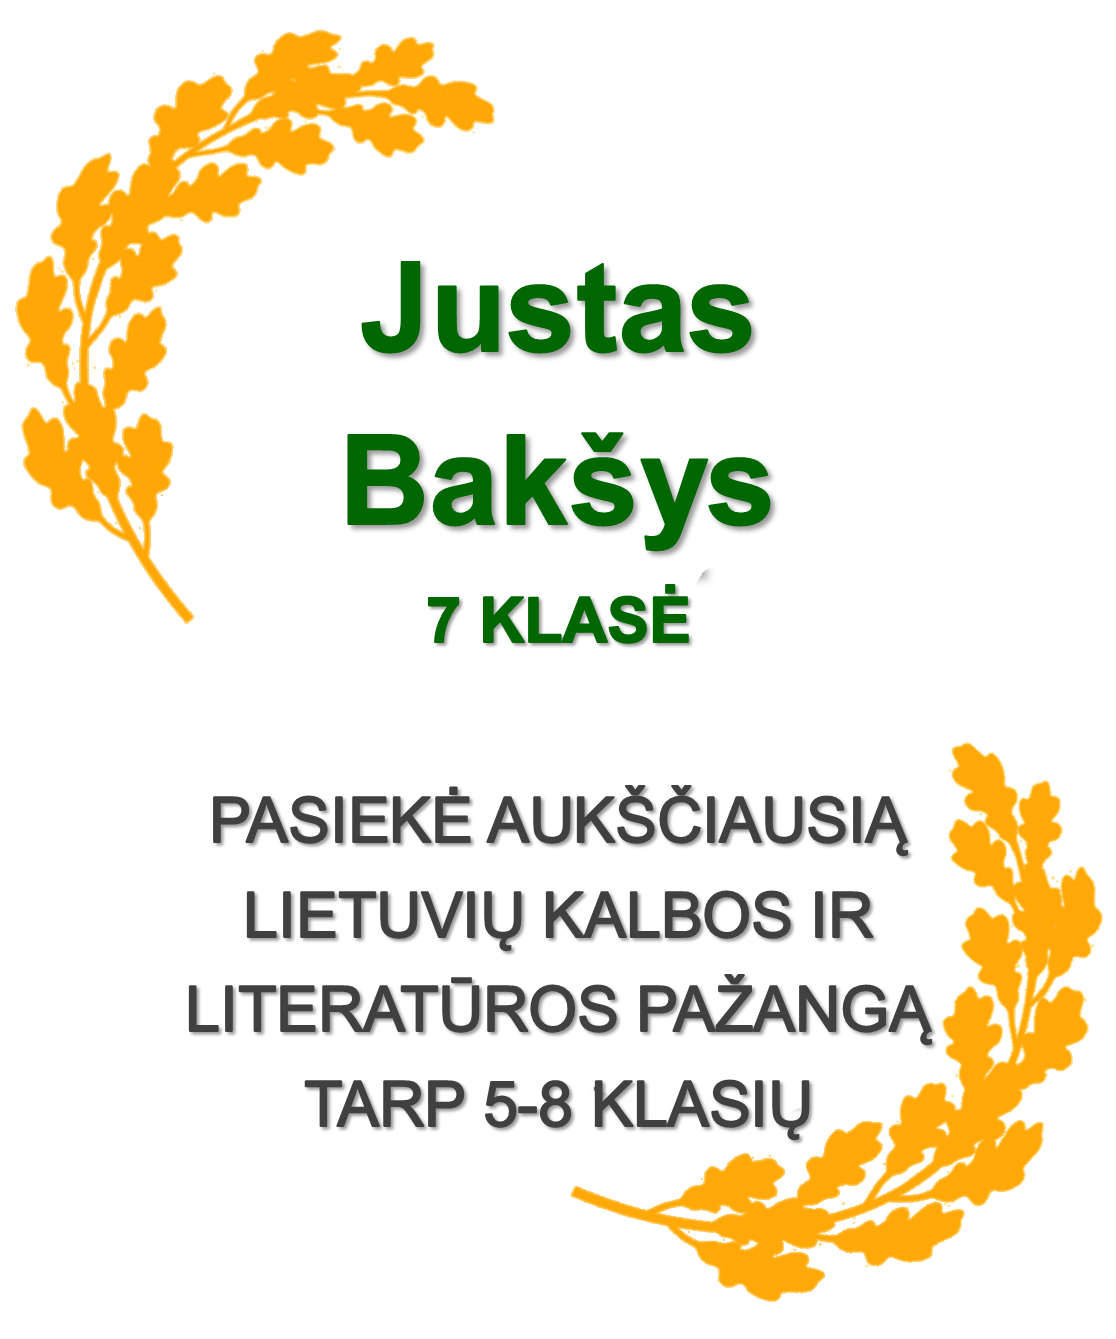 7-Baksys-J.-Lietuviu-k.-ir-literatura